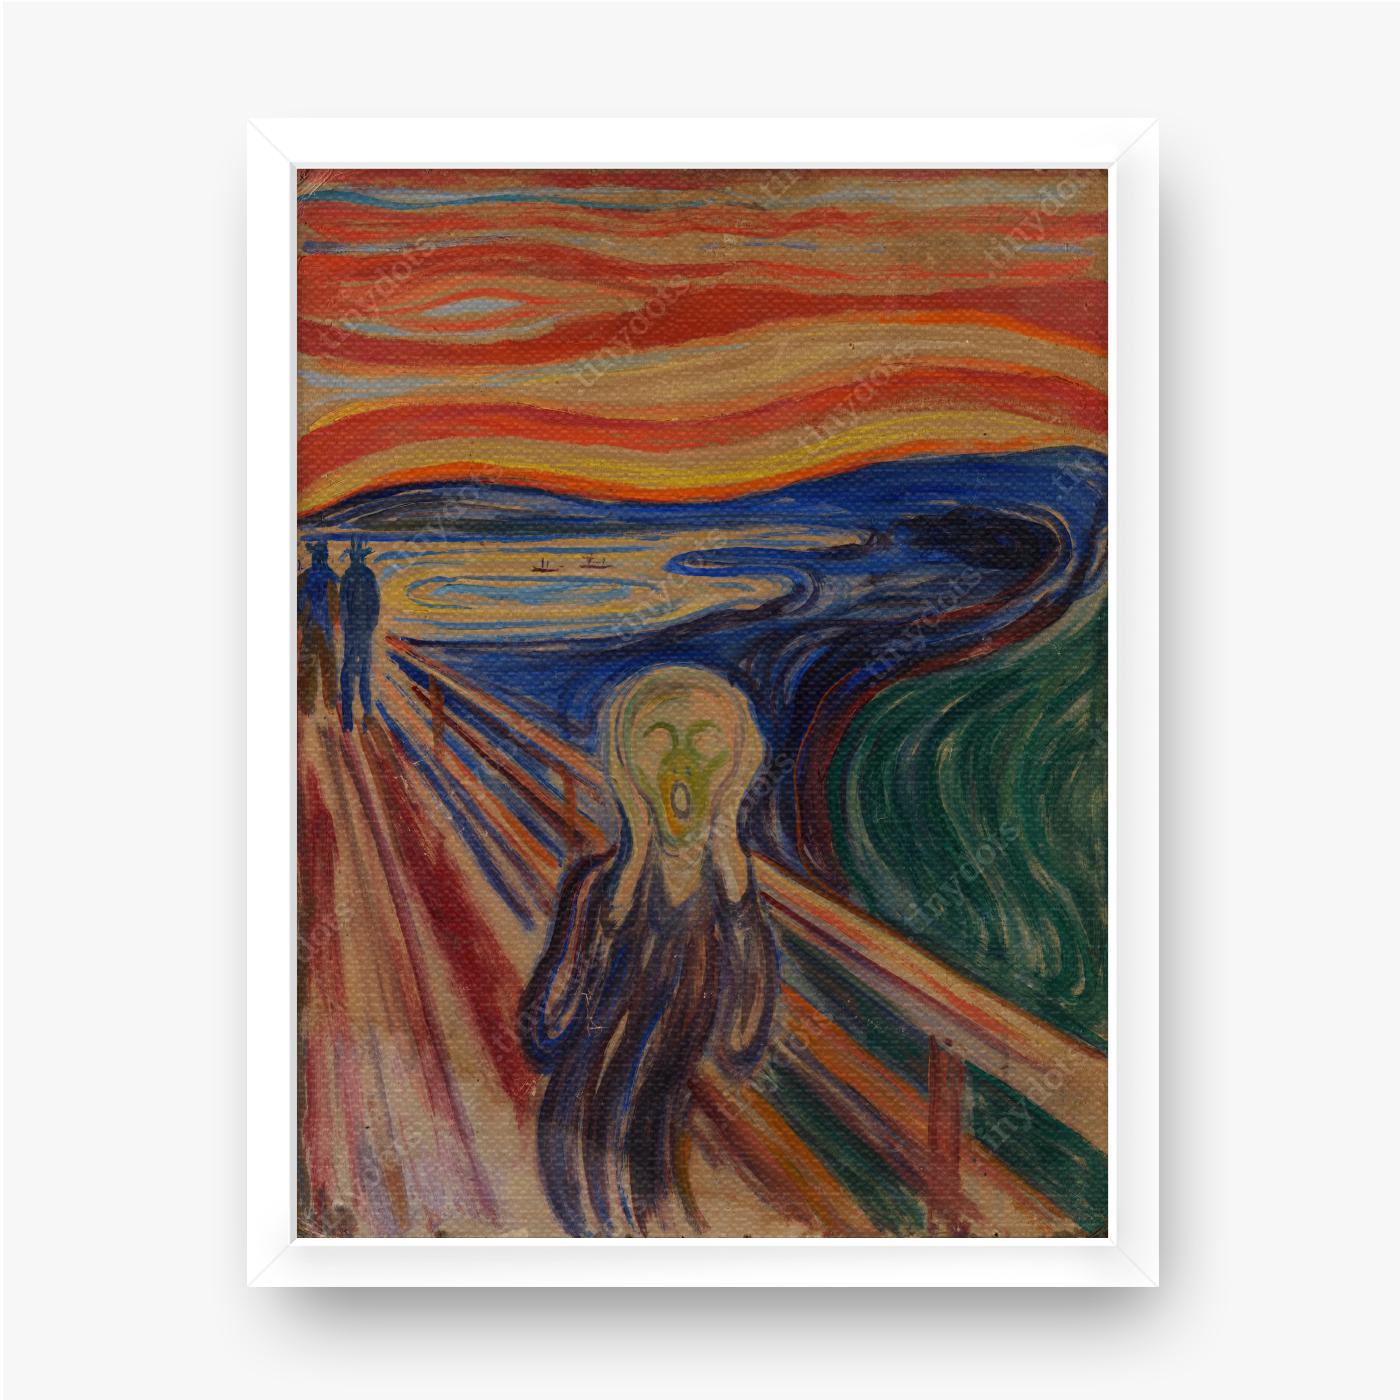 Ingelijste afbeelding op canvas Edvard Munch - De Schreeuw 1910